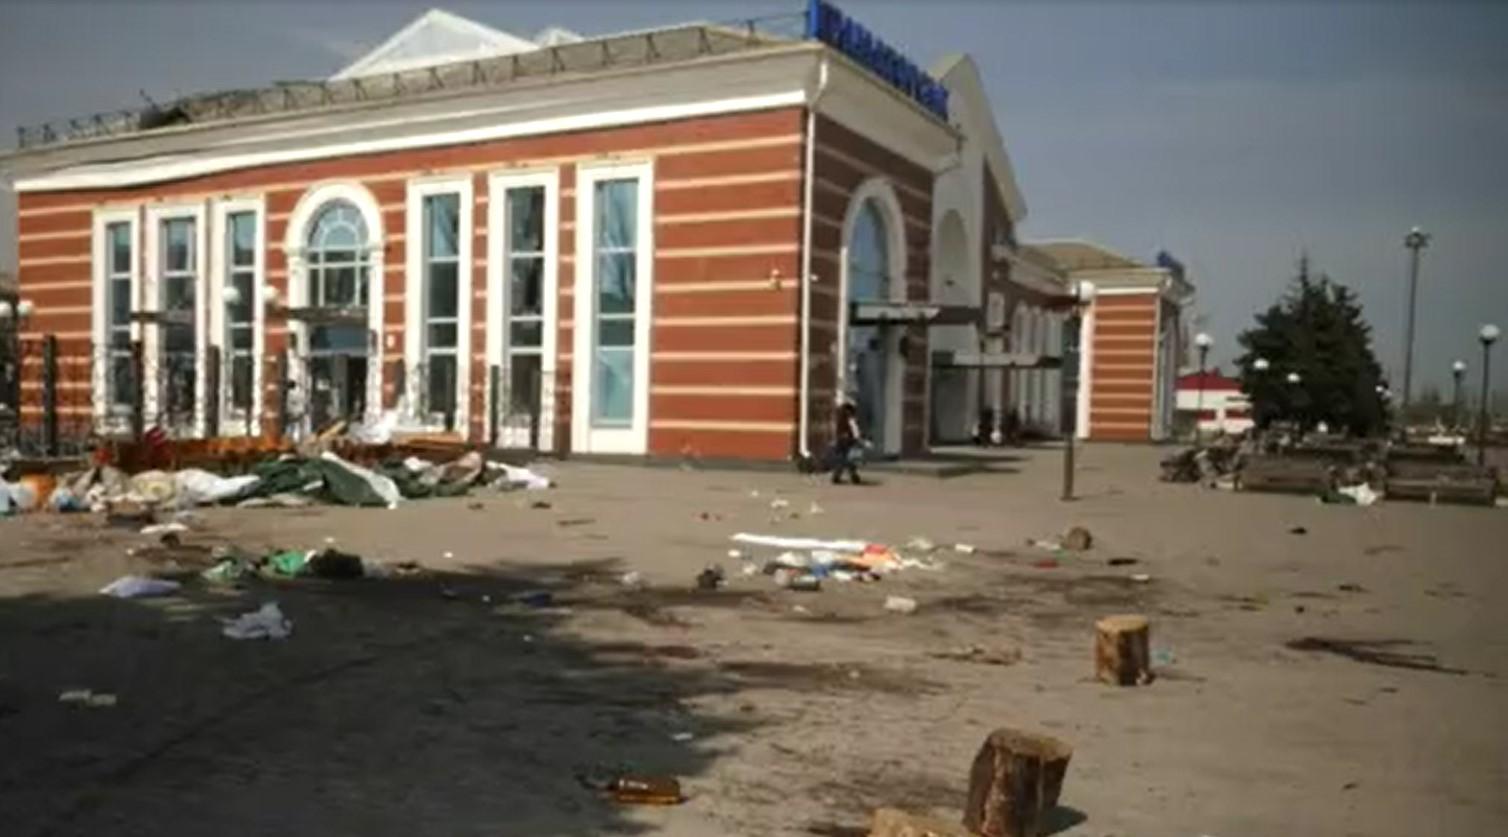 Horori rata: Stižu svjedočanstva preživjelih napad na željezničku stanicu, kod Kijeva nova masovna grobnica